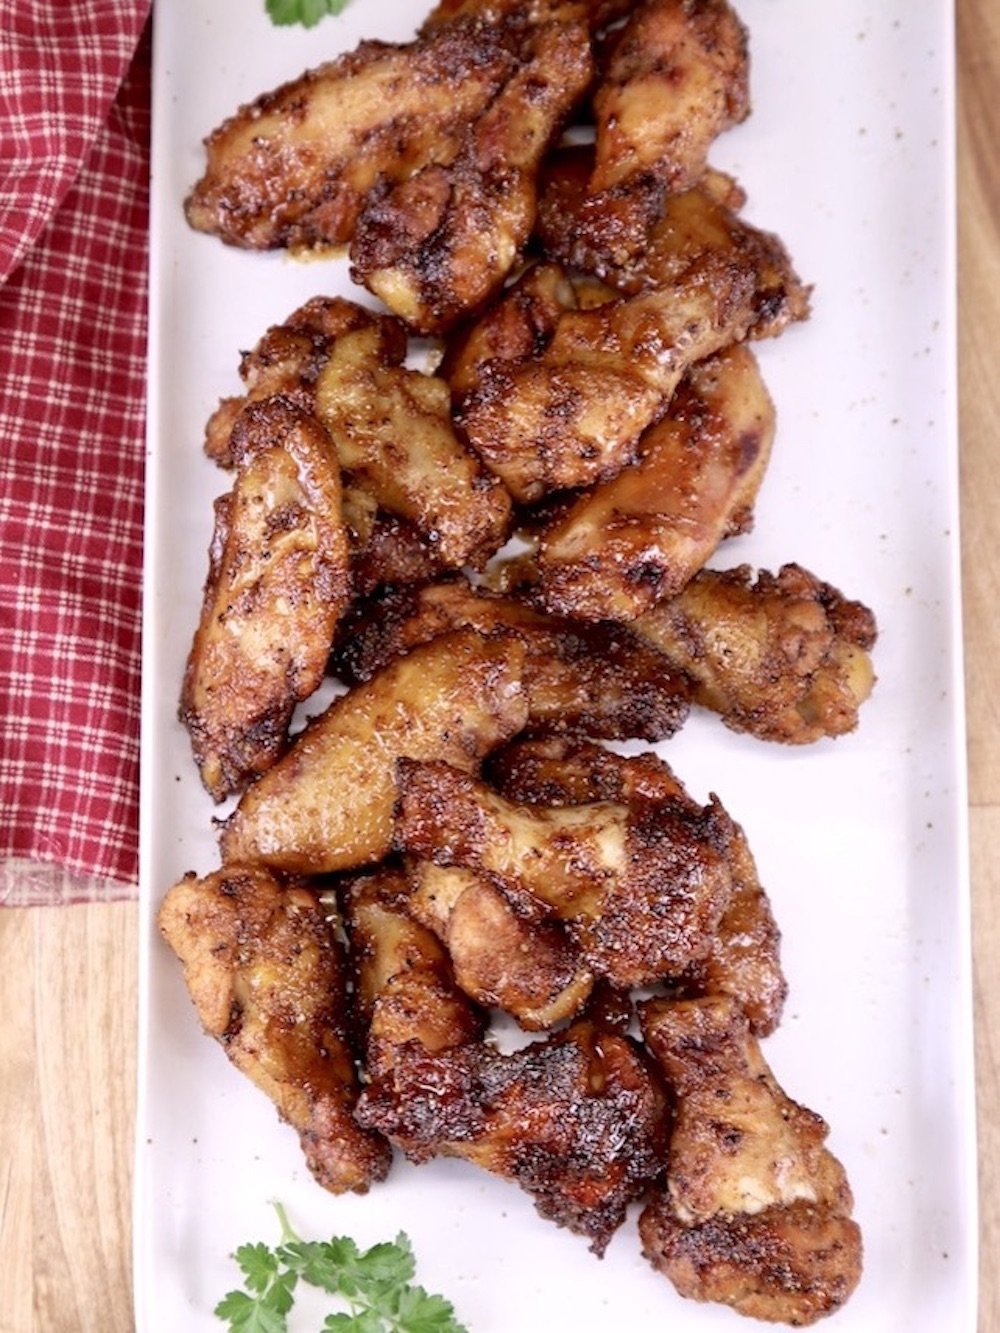 Maple glazed chicken wings